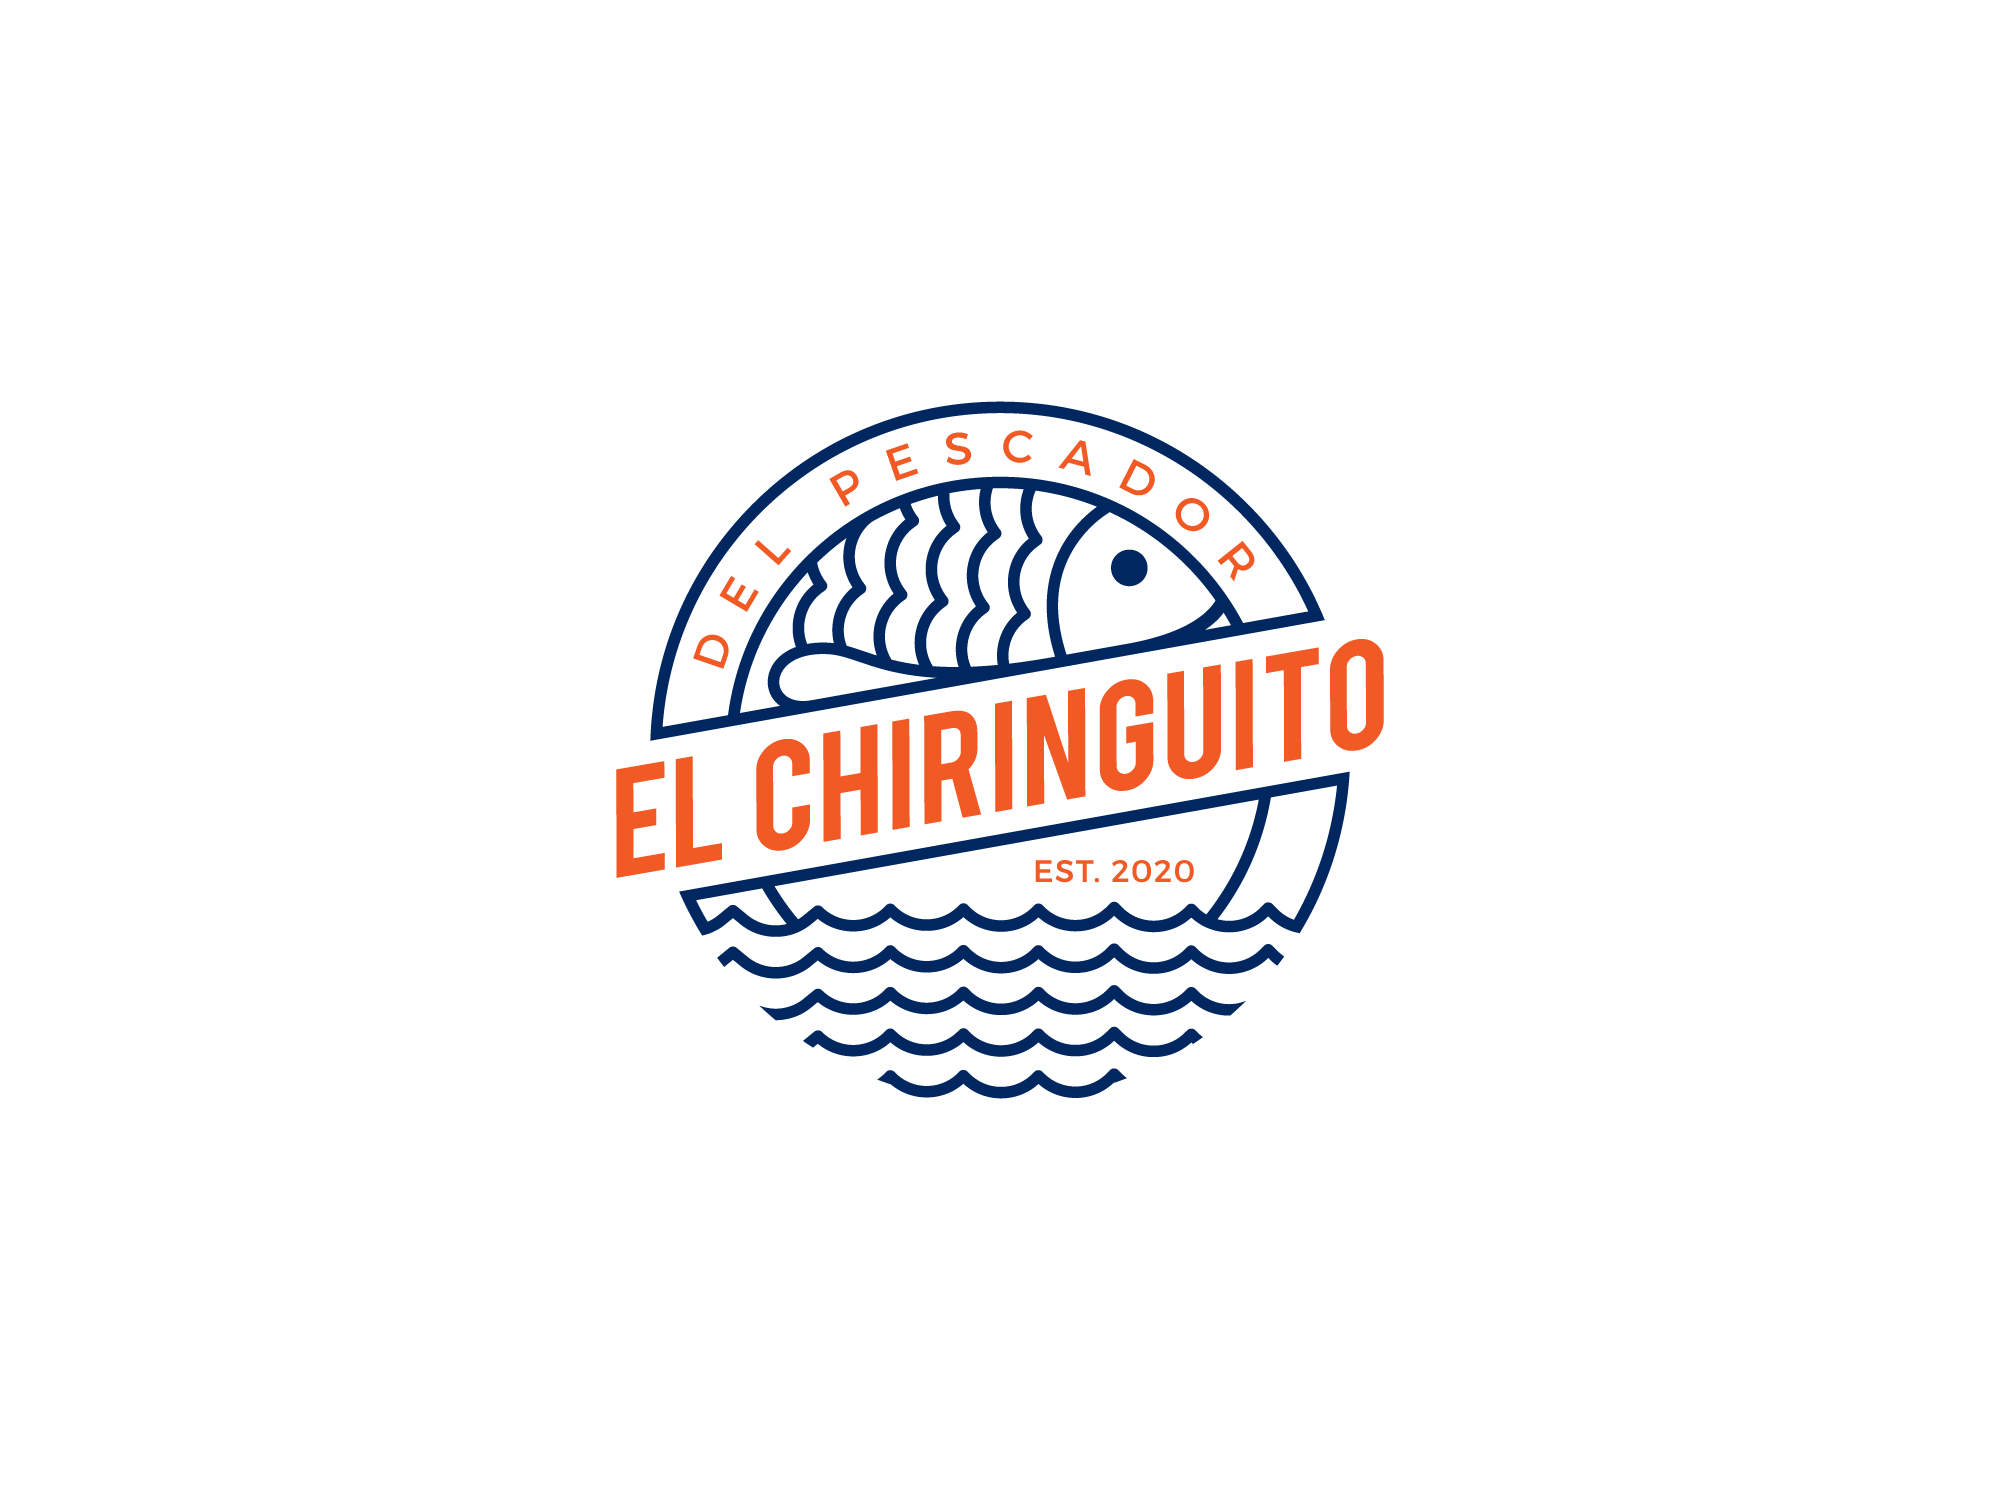 El top 48 imagen el chiringuito logo - Abzlocal.mx